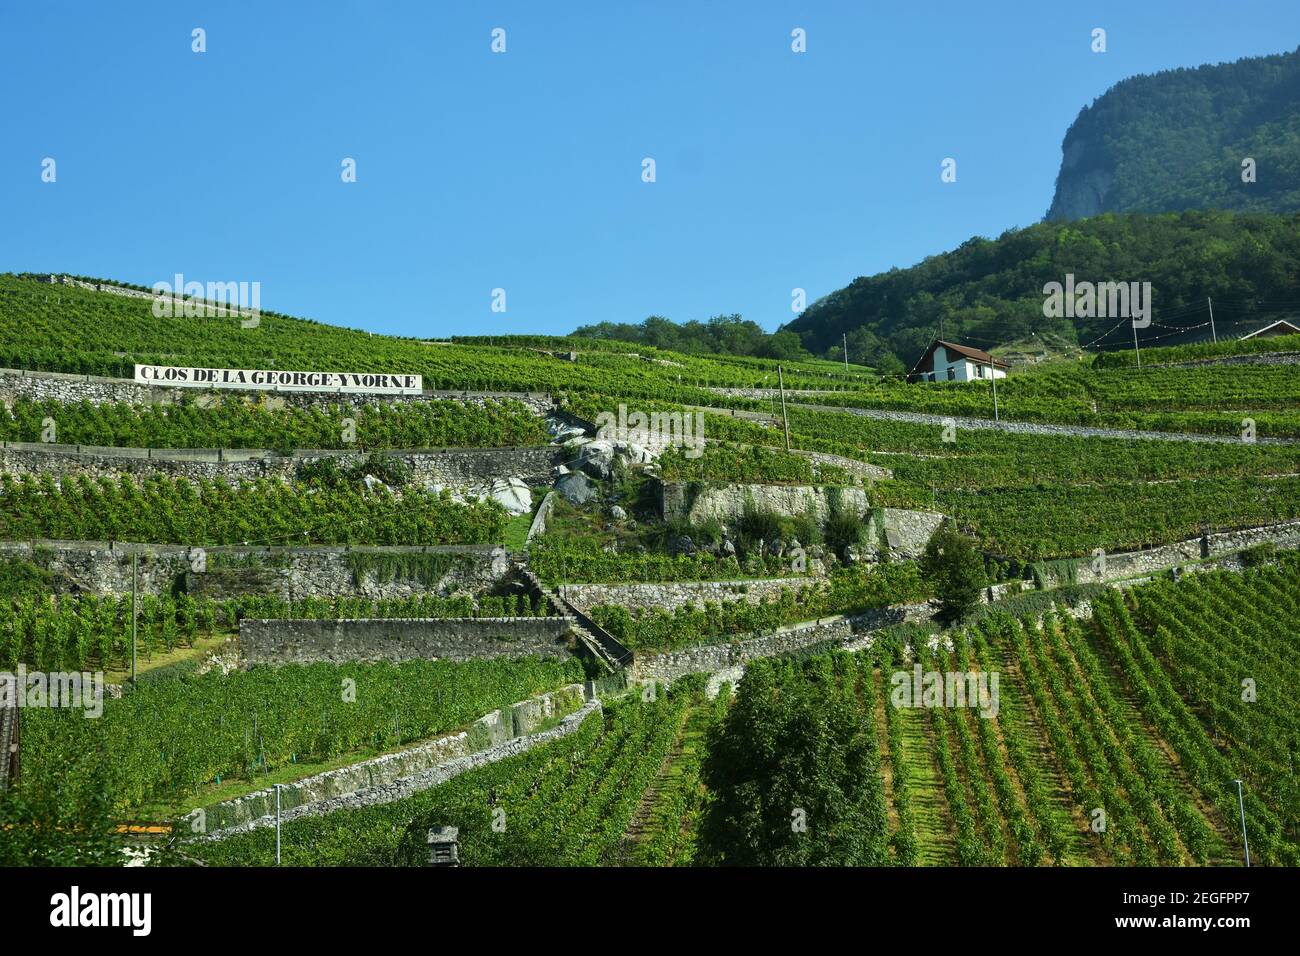 Chablais, Suisse- 24 août 2019. Clos de la George Yvorne, vignoble en terrasse à Chablais, canton de Vaud, montagnes des Alpes, Suisse Banque D'Images